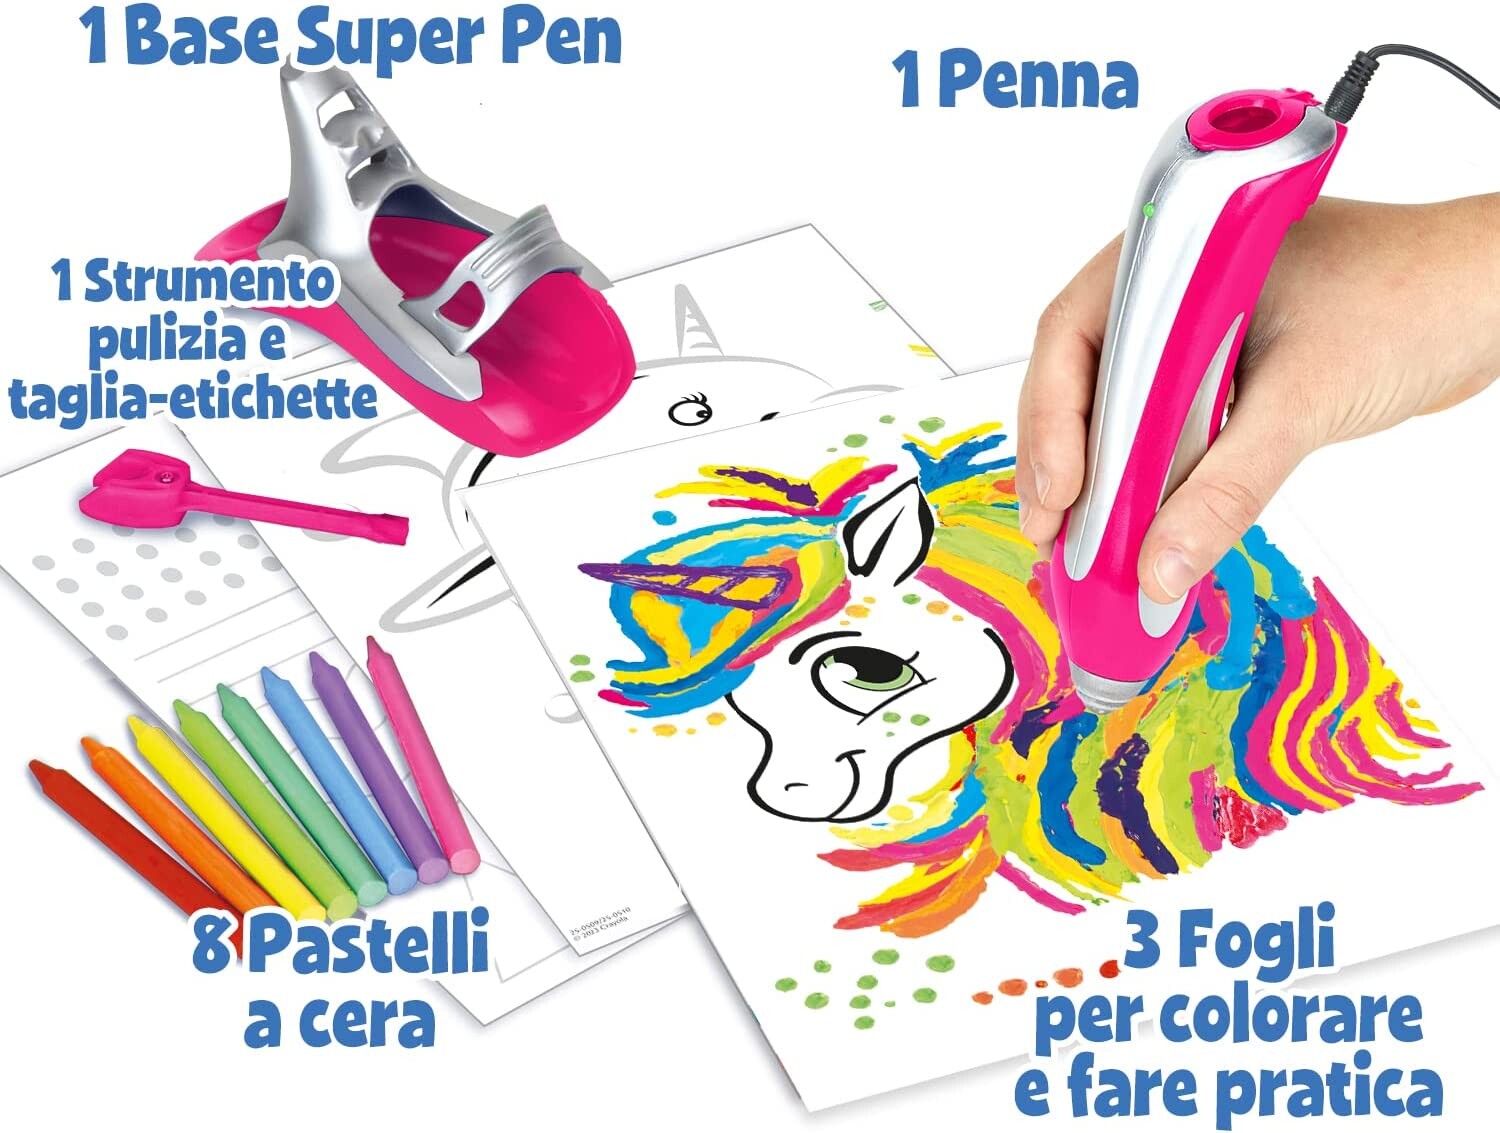 Crayola - super pen unicorno neon, gioco per sciogliere i pastelli a cera e creare disegni in rilievo, attività creativa e regalo per bambini, età 8+ - CRAYOLA